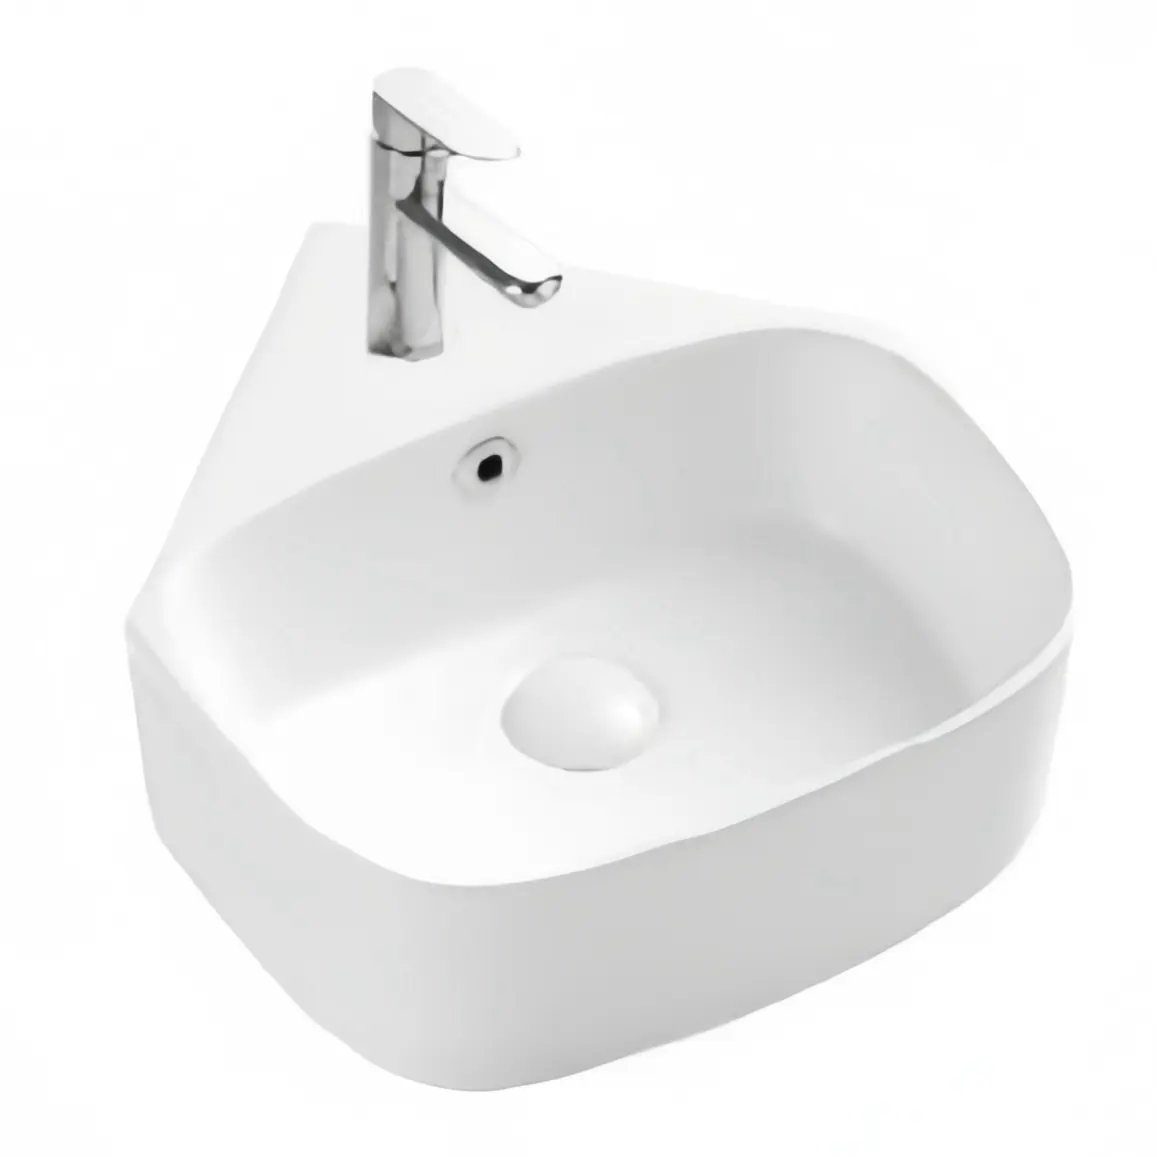 浴室用の小さなコーナー吊り洗面器モダンな家のデザイン手洗いアート洗面器